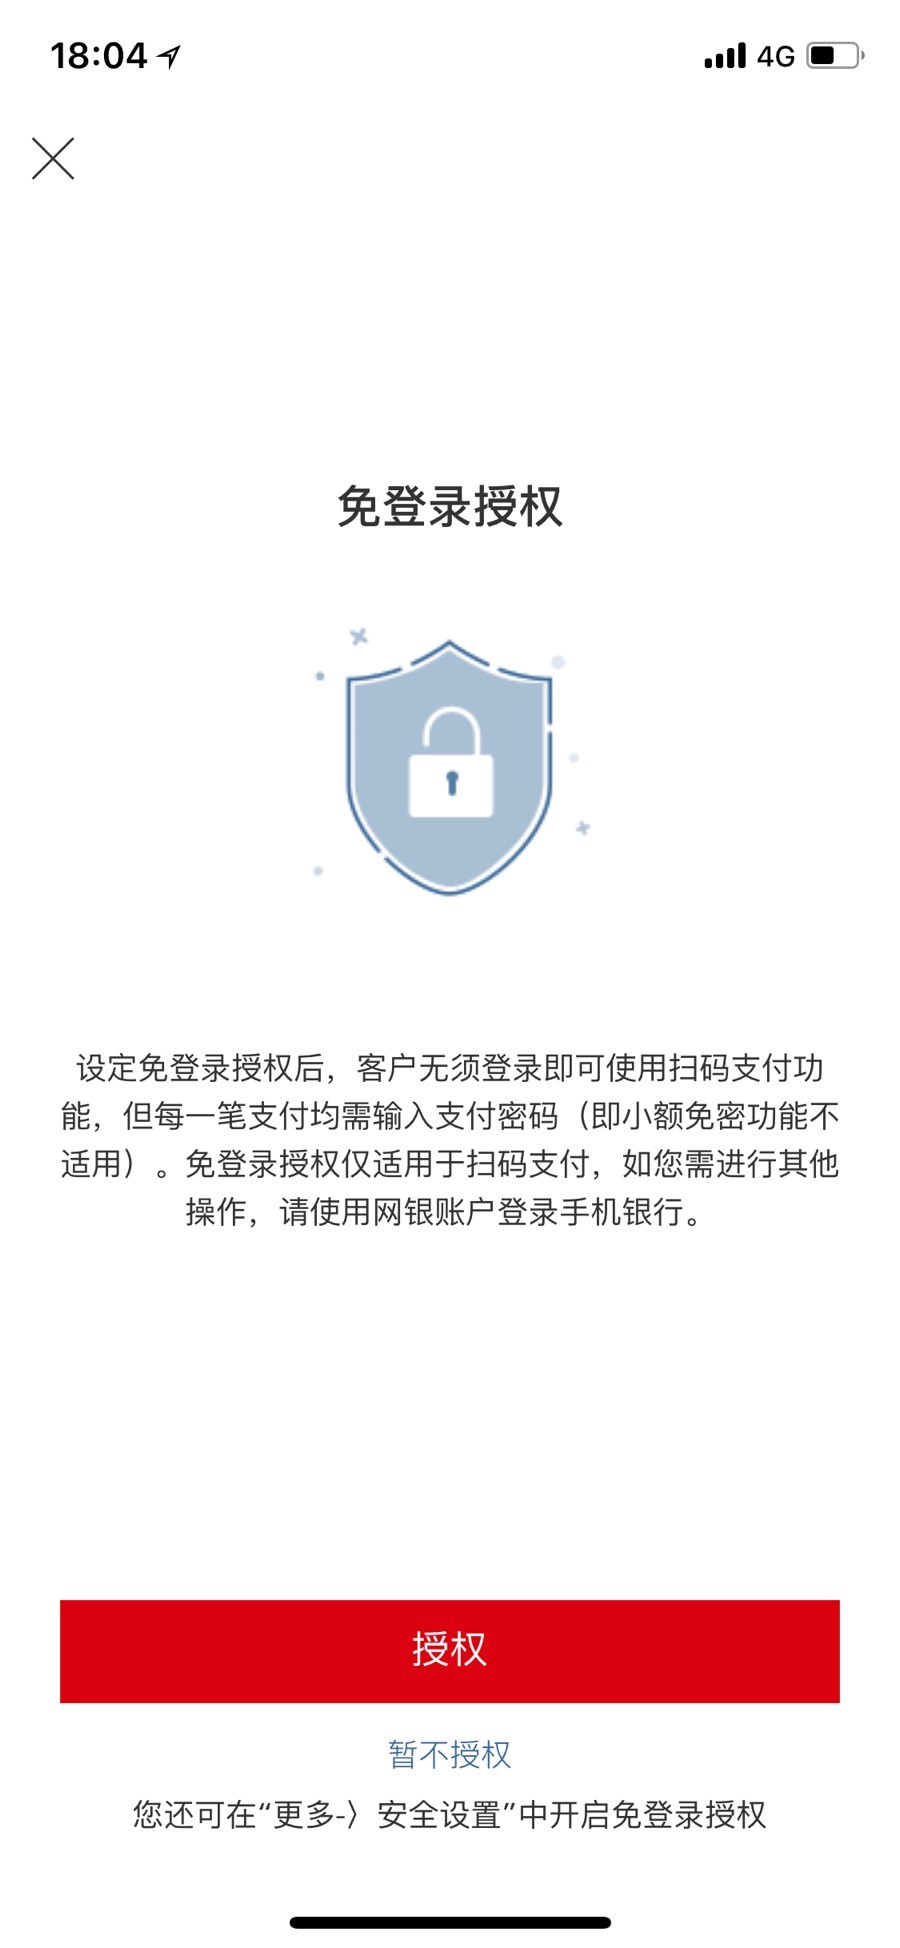 汇丰中国手机银行免登陆授权页面